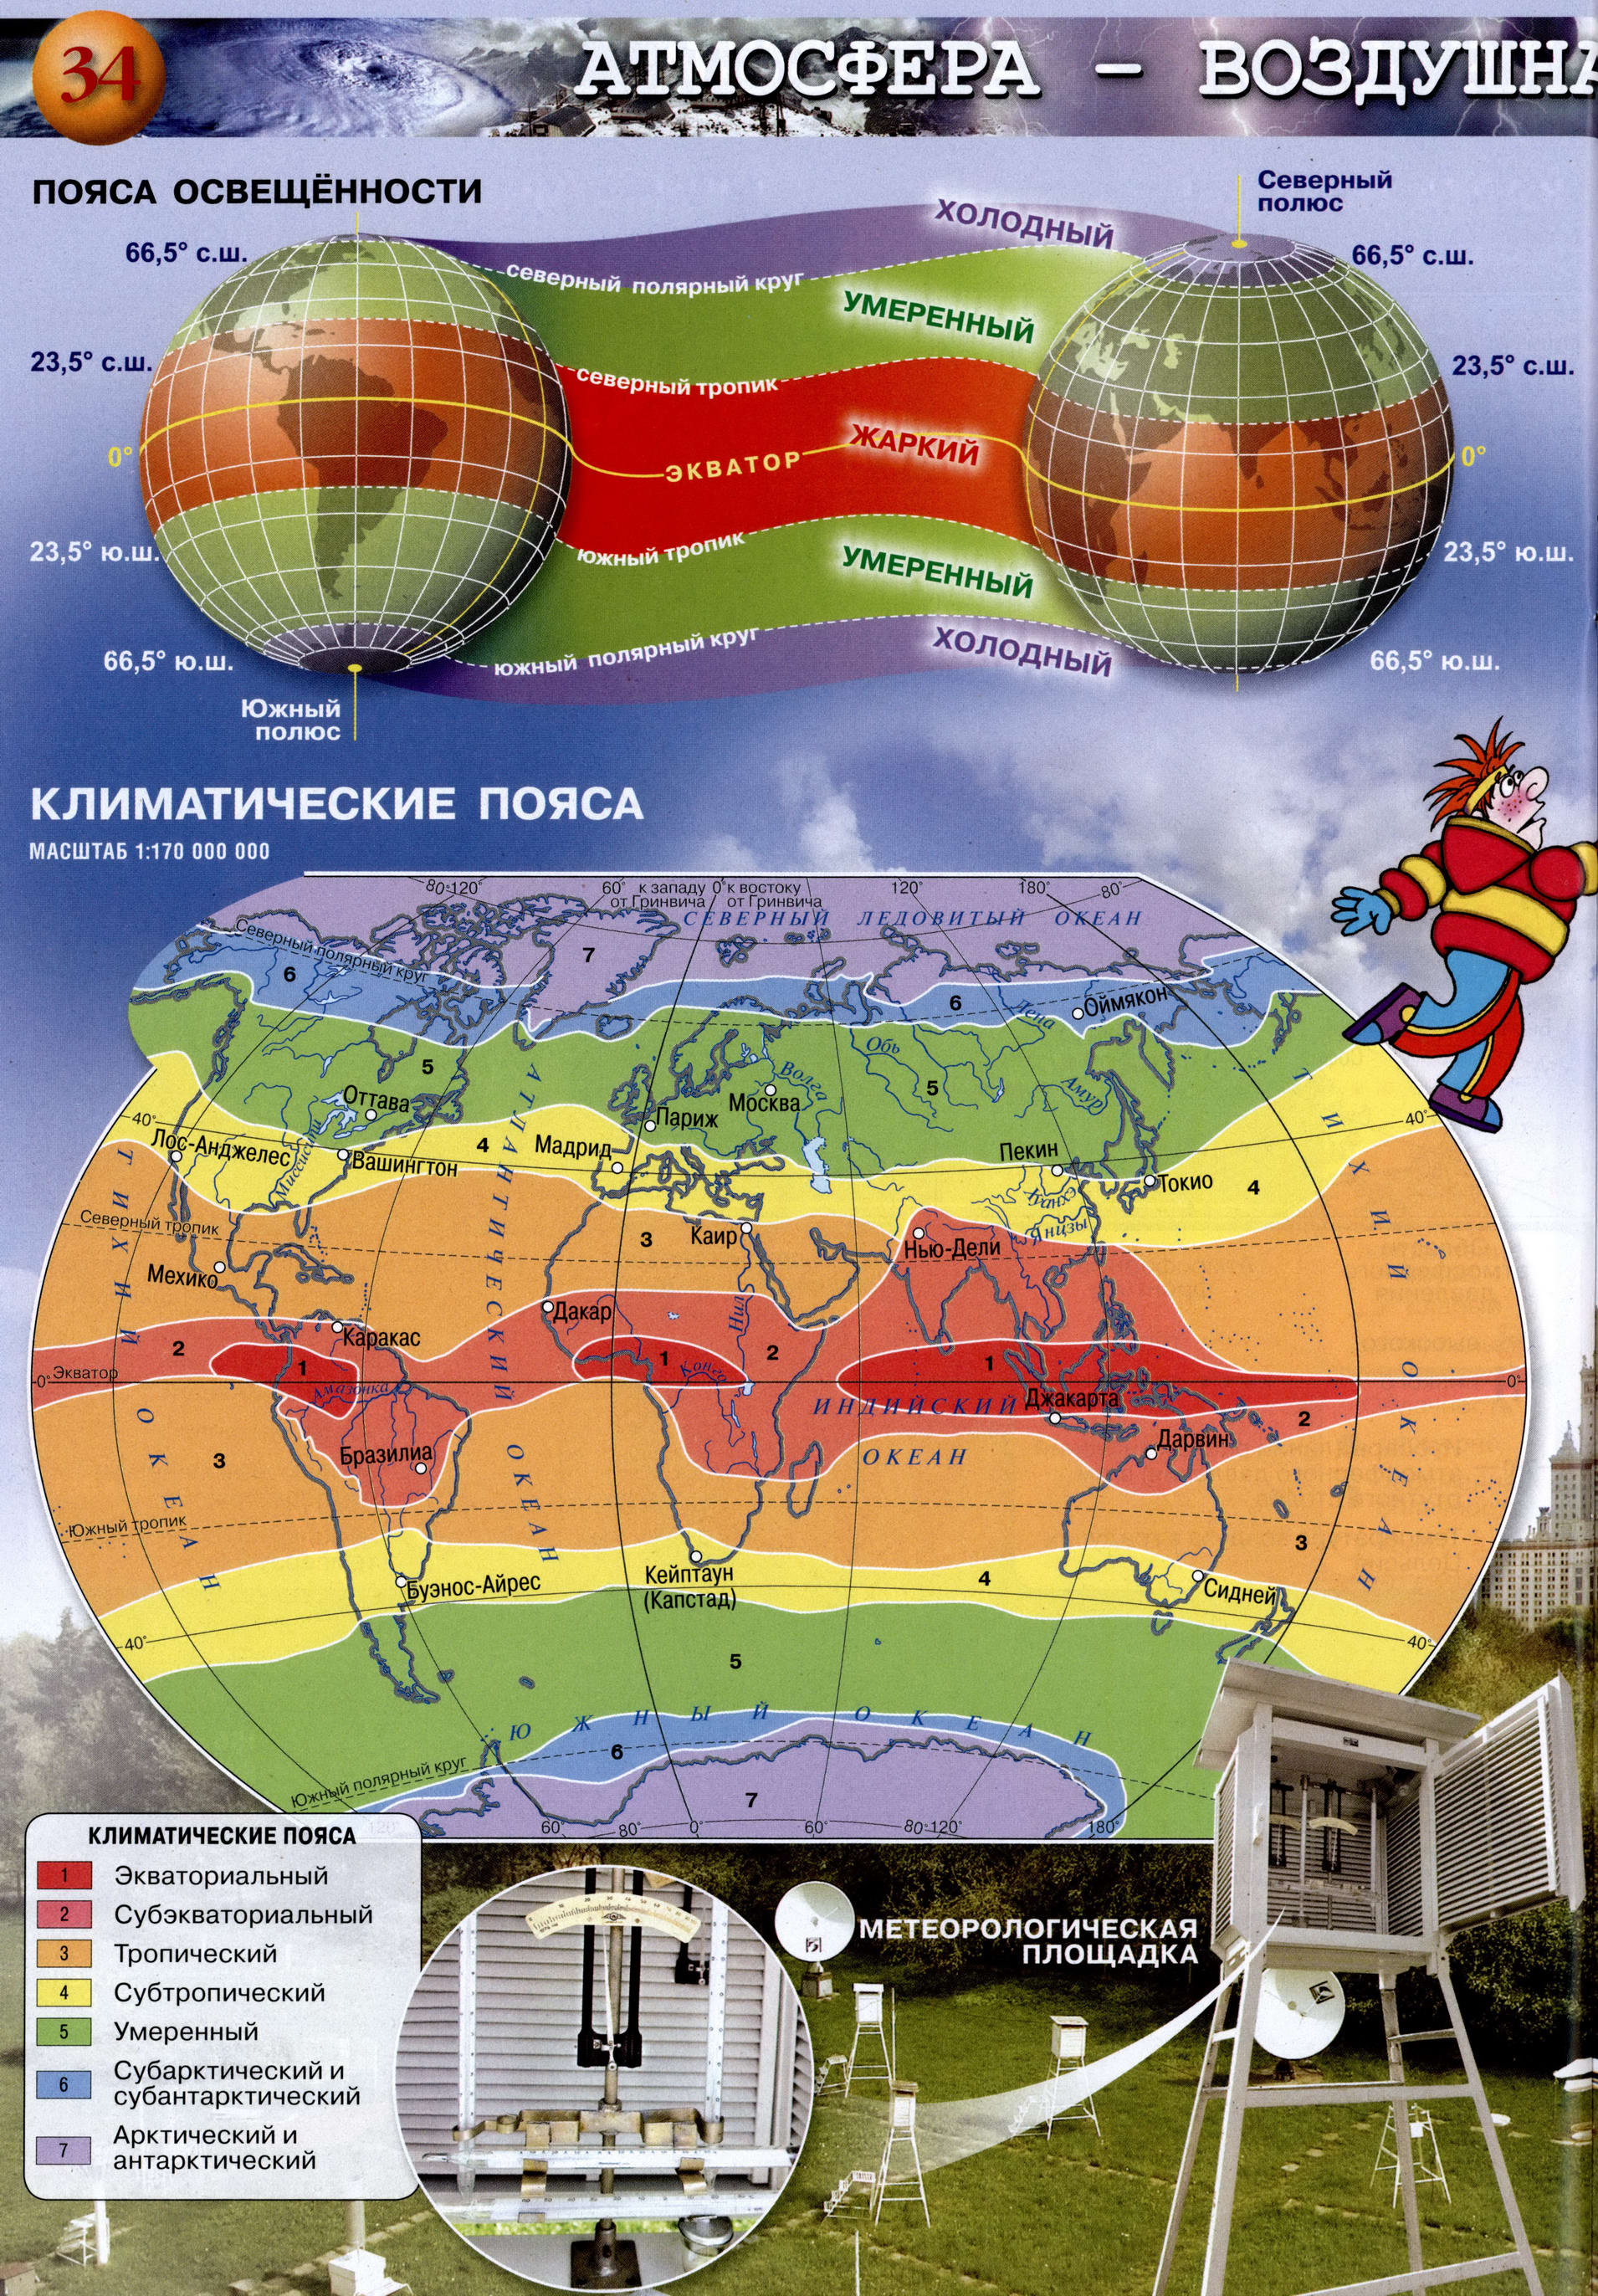  пояса Земли стр 34,35 атлас по географии Сферы 5-6 класс .